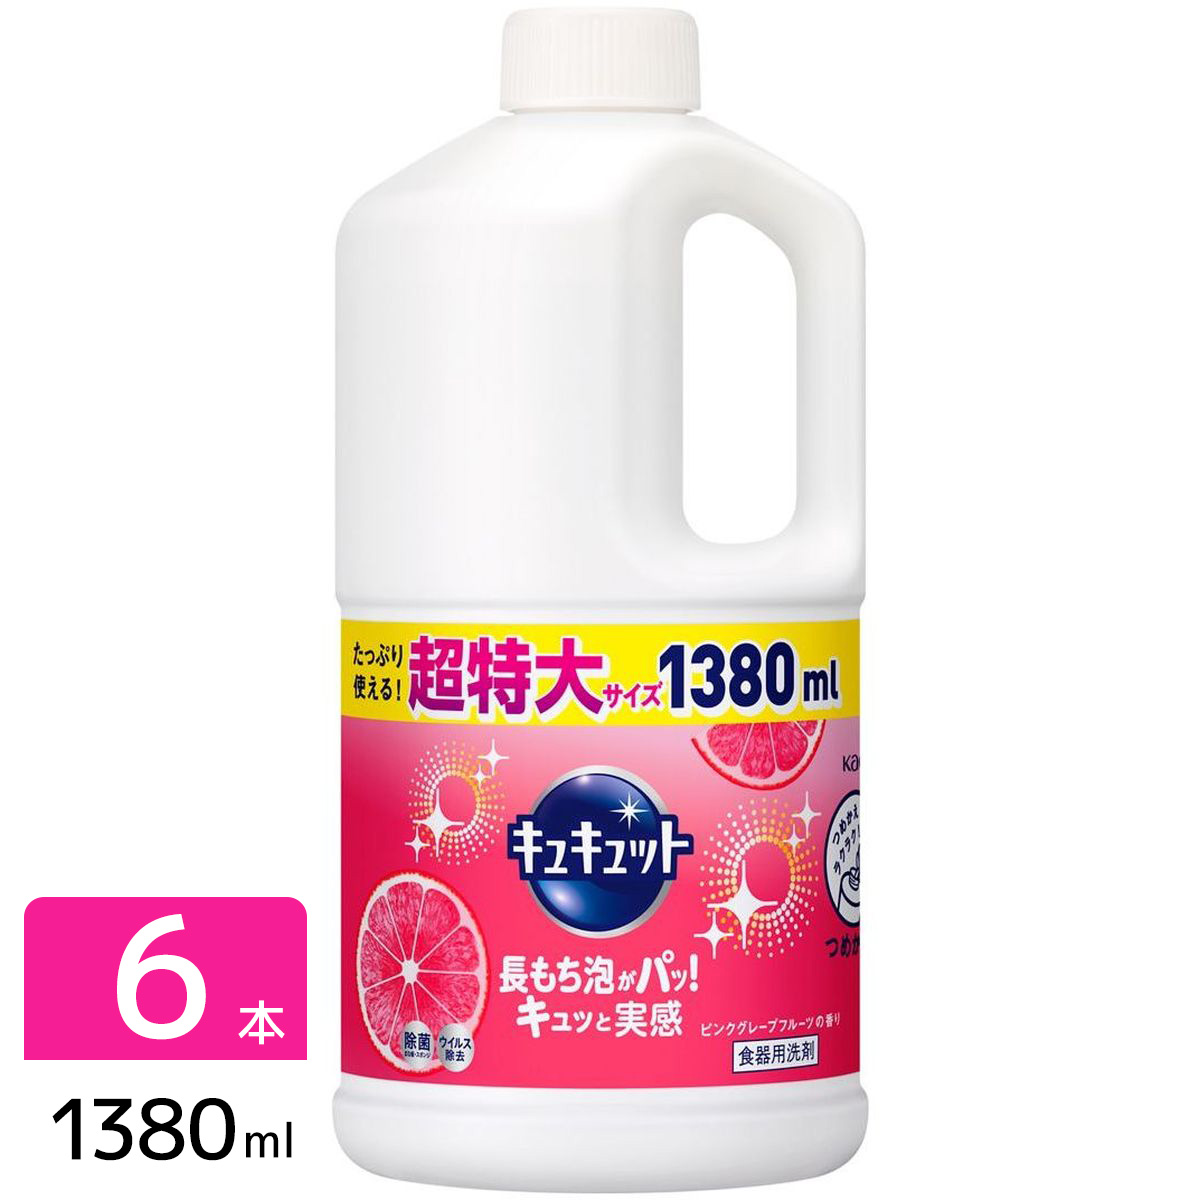 キュキュット 食器用洗剤 ピンクグレープフルーツの香り 詰め替え 1380ml×6本